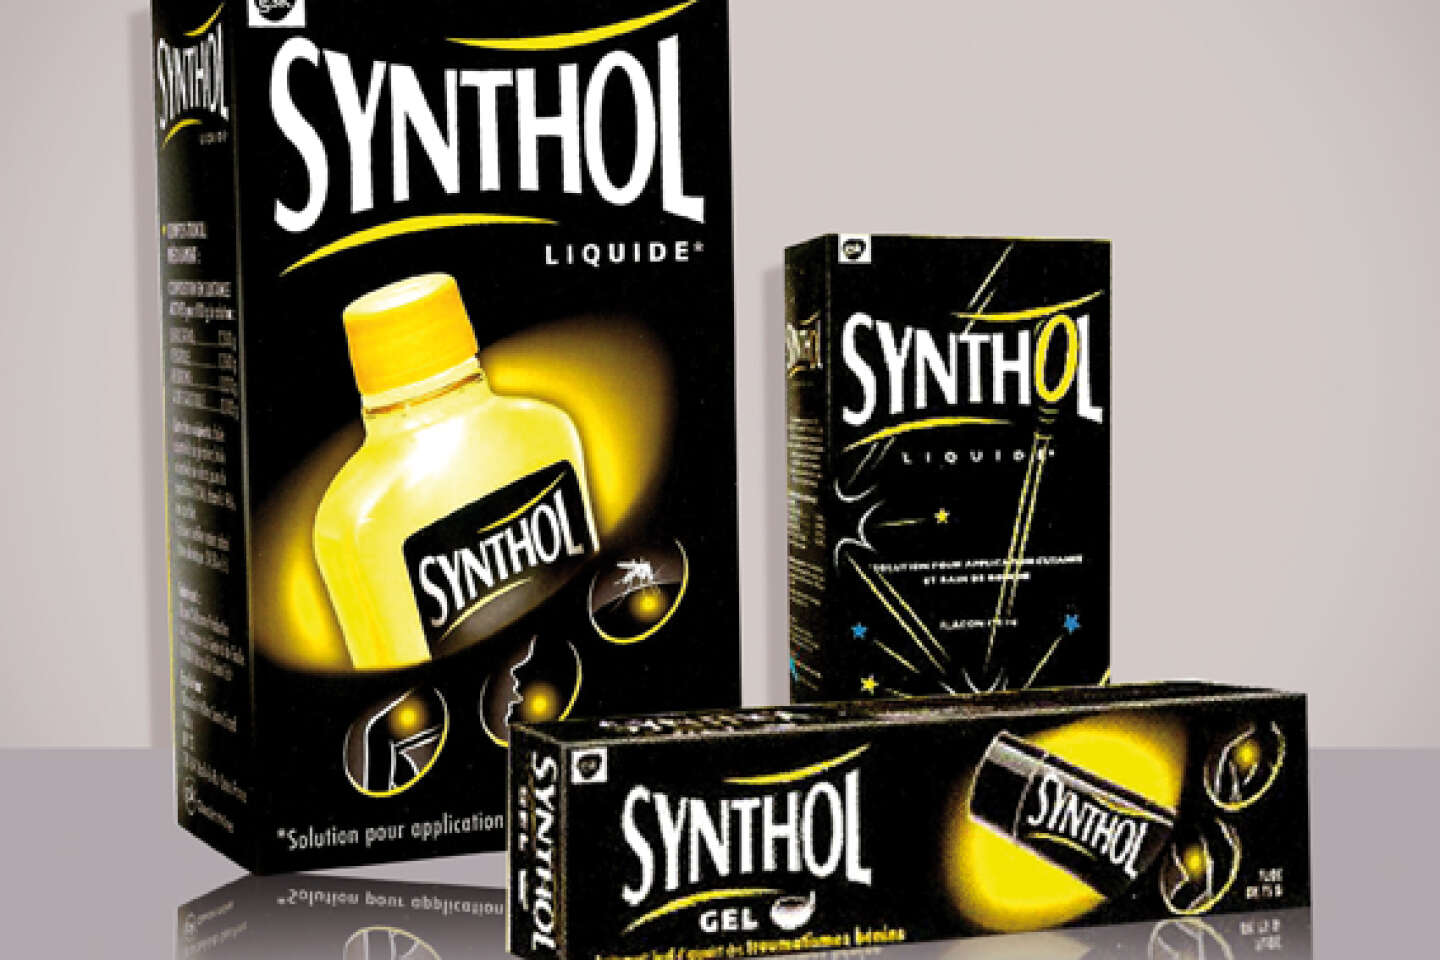 Le britannique GSK relance la lotion Synthol